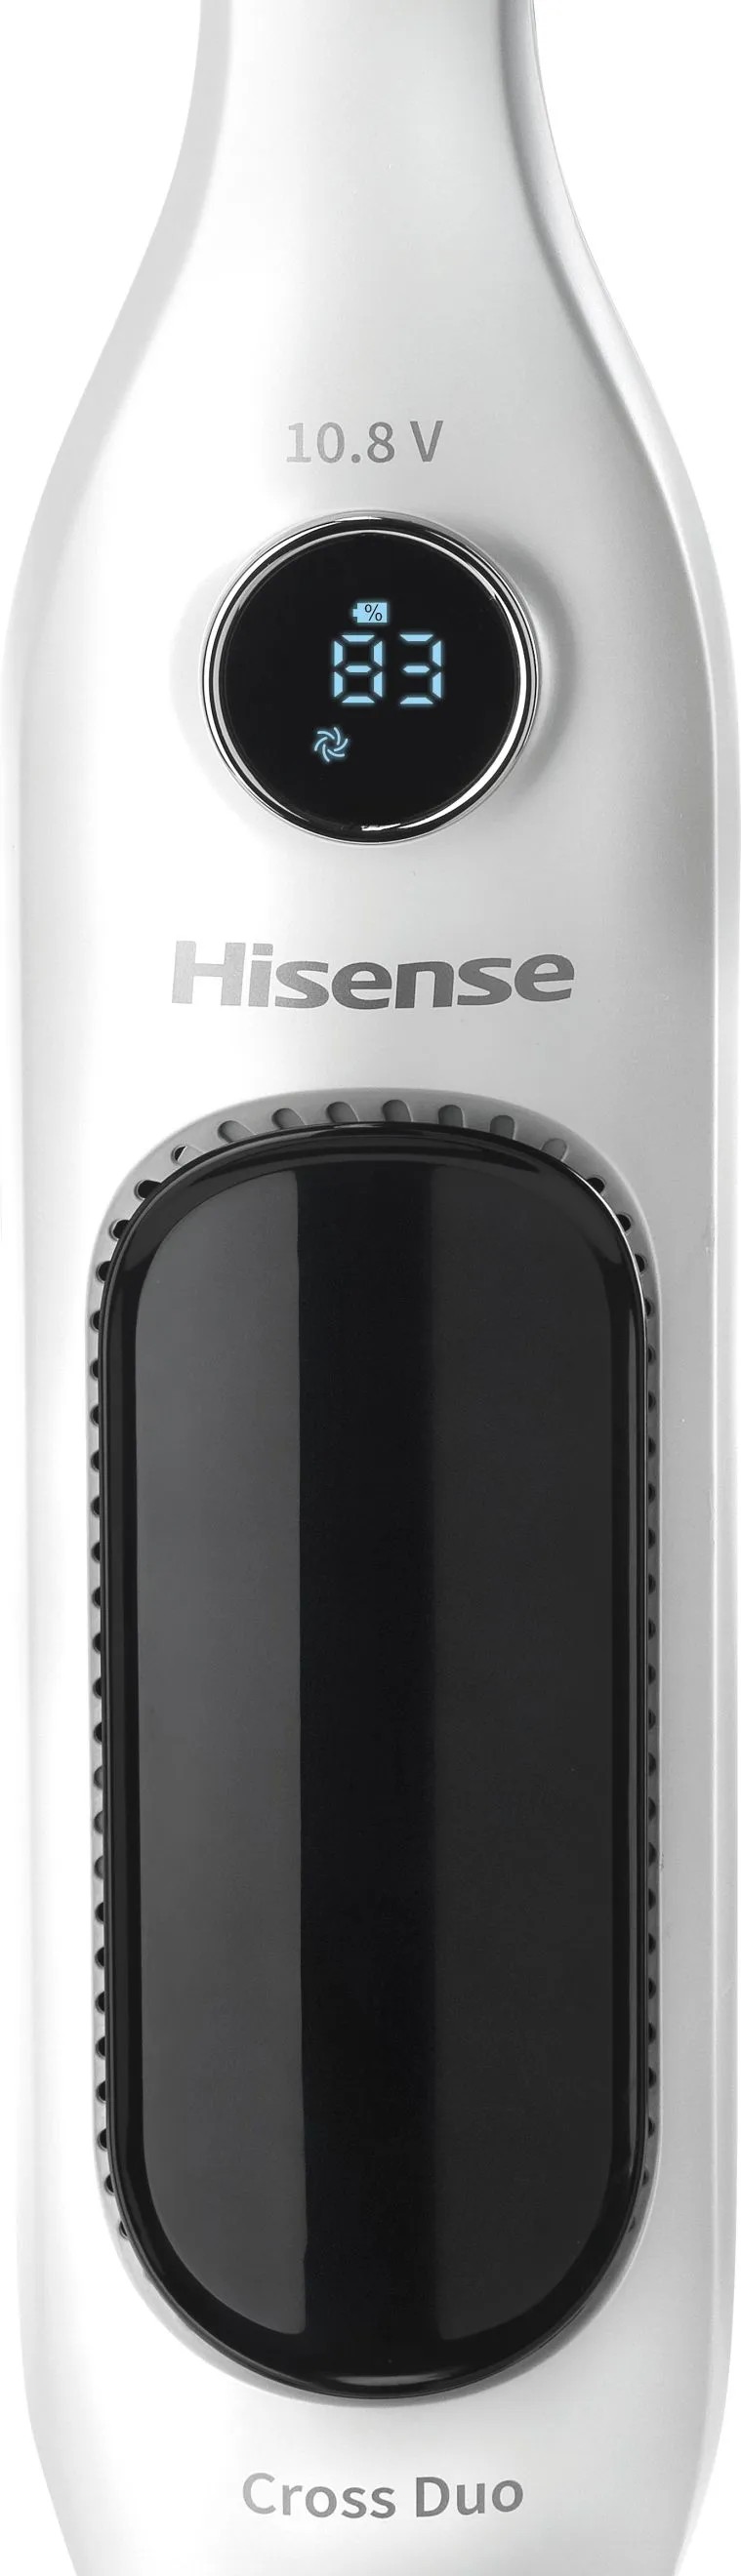 продаём Hisense HVC5101W (VP6901-GS) в Украине - фото 4